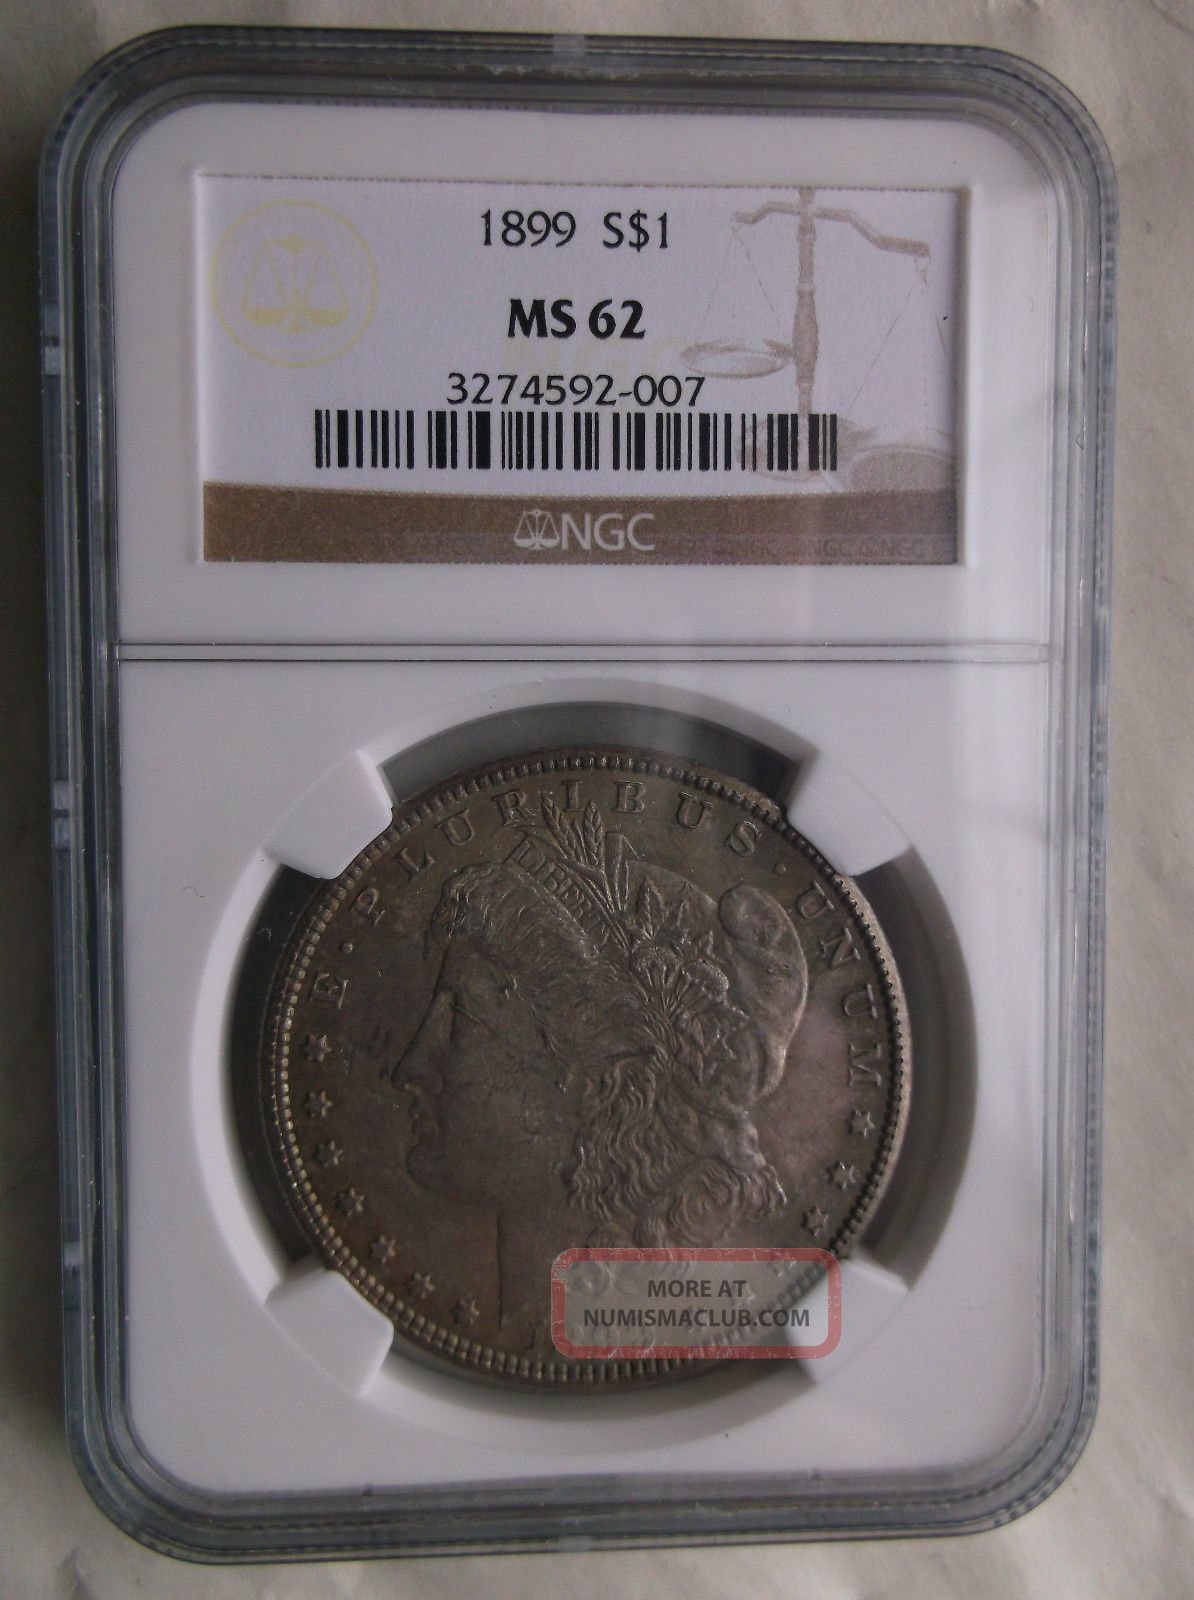 1899 Morgan Silver Dollar S $1 Ngc Graded Ms 62 Greenish Tone On Both